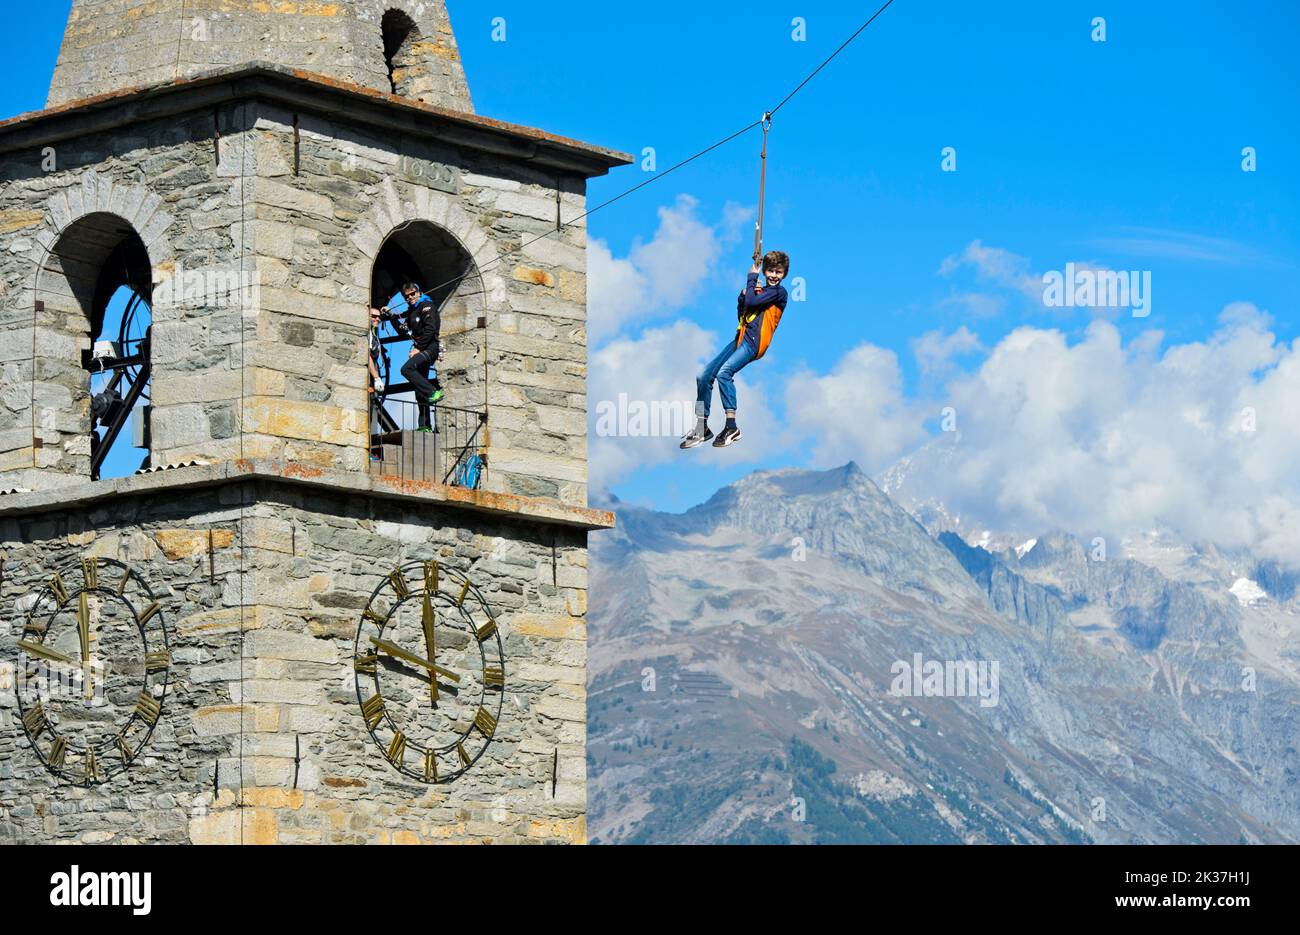 Junge, der vom Kirchturm, Chinderwältfäscht, Children's World Festival, Heidadorf Visperterminen, Wallis, Schweiz, eine Seilrutsche hinunterrutscht Stockfoto